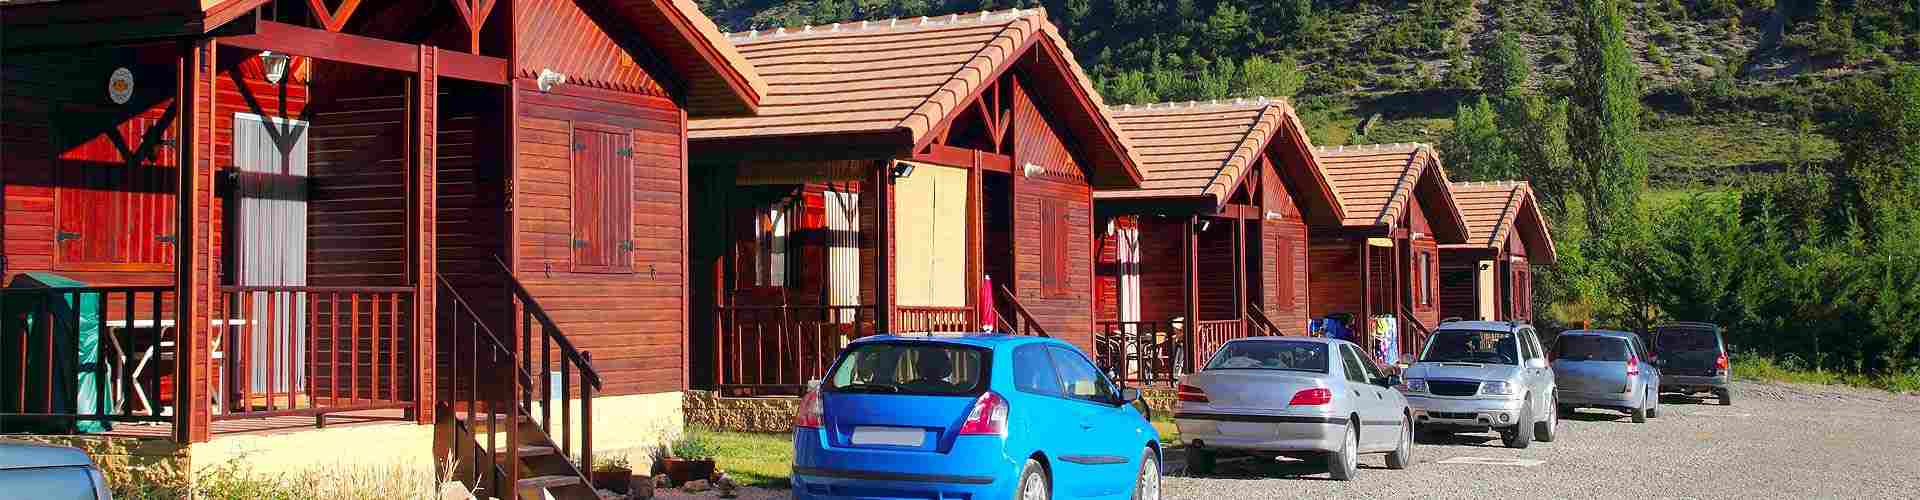 Campings y bungalows en Bode
           
           


          
          
          


